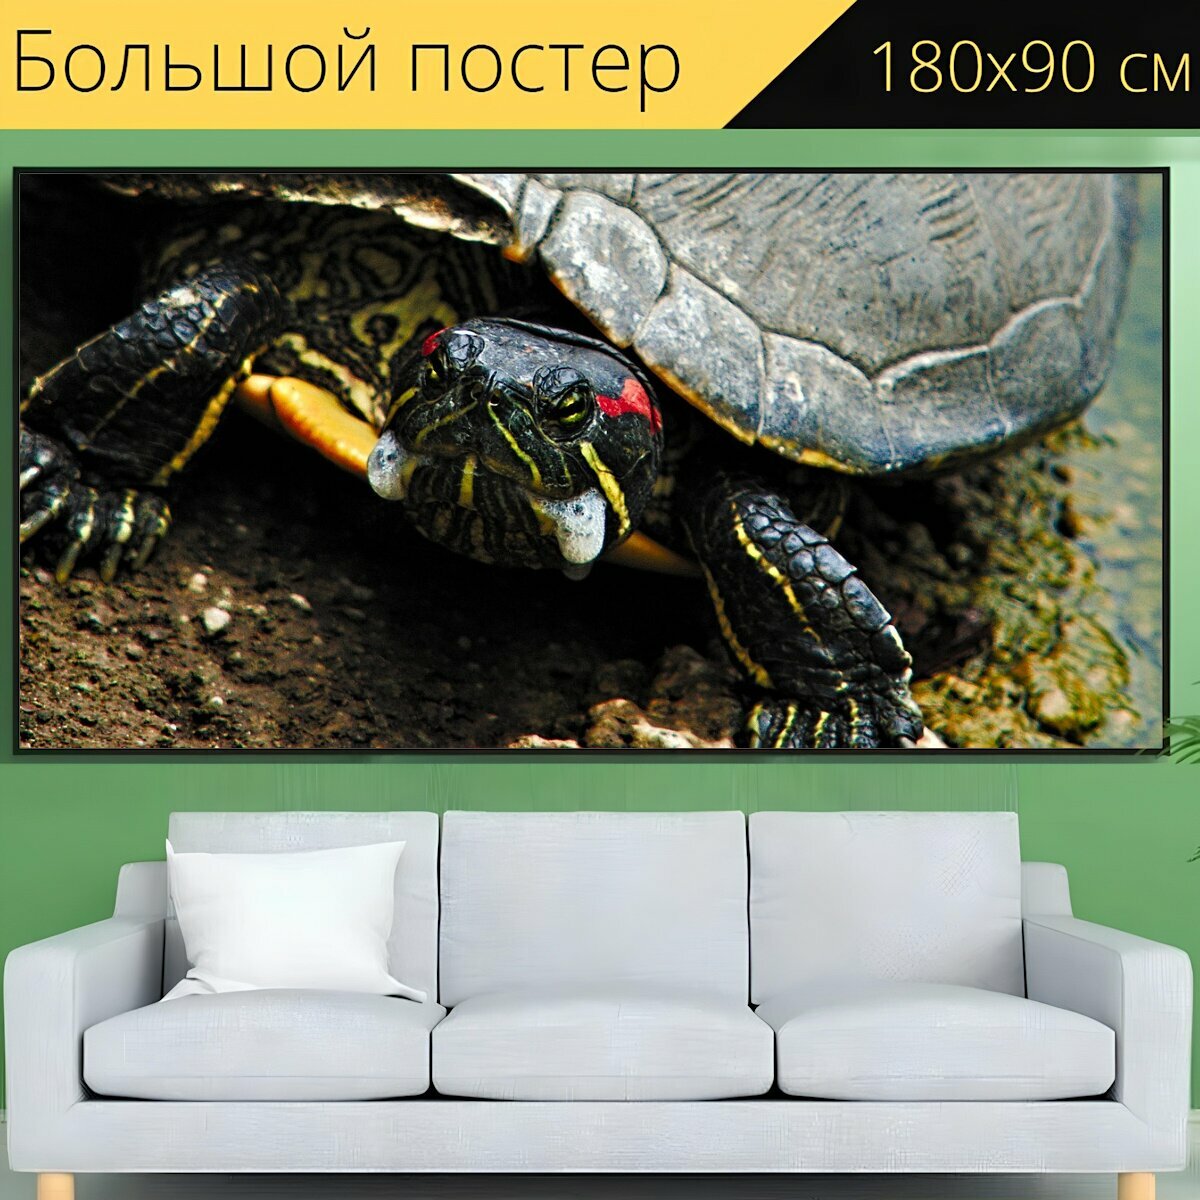 Большой постер "Черепаха, природа, животное" 180 x 90 см. для интерьера